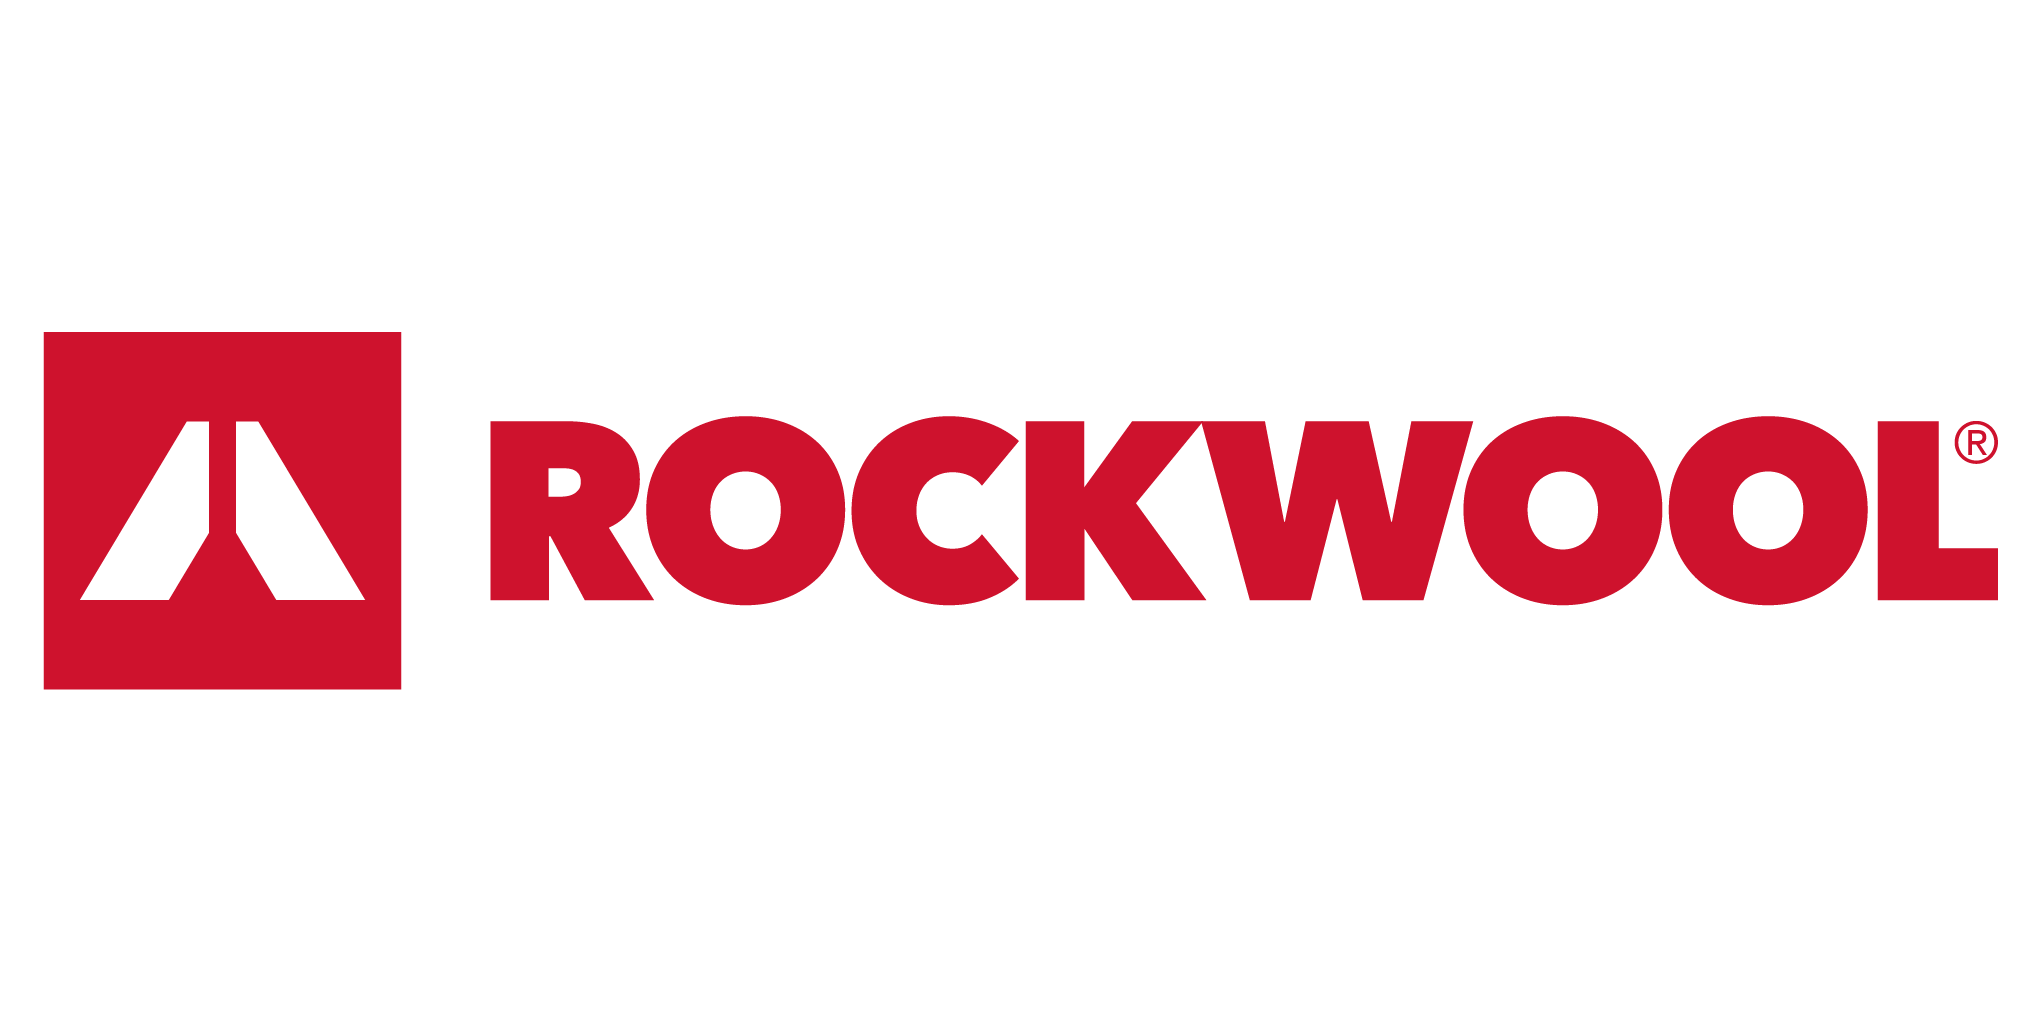 Rockwool